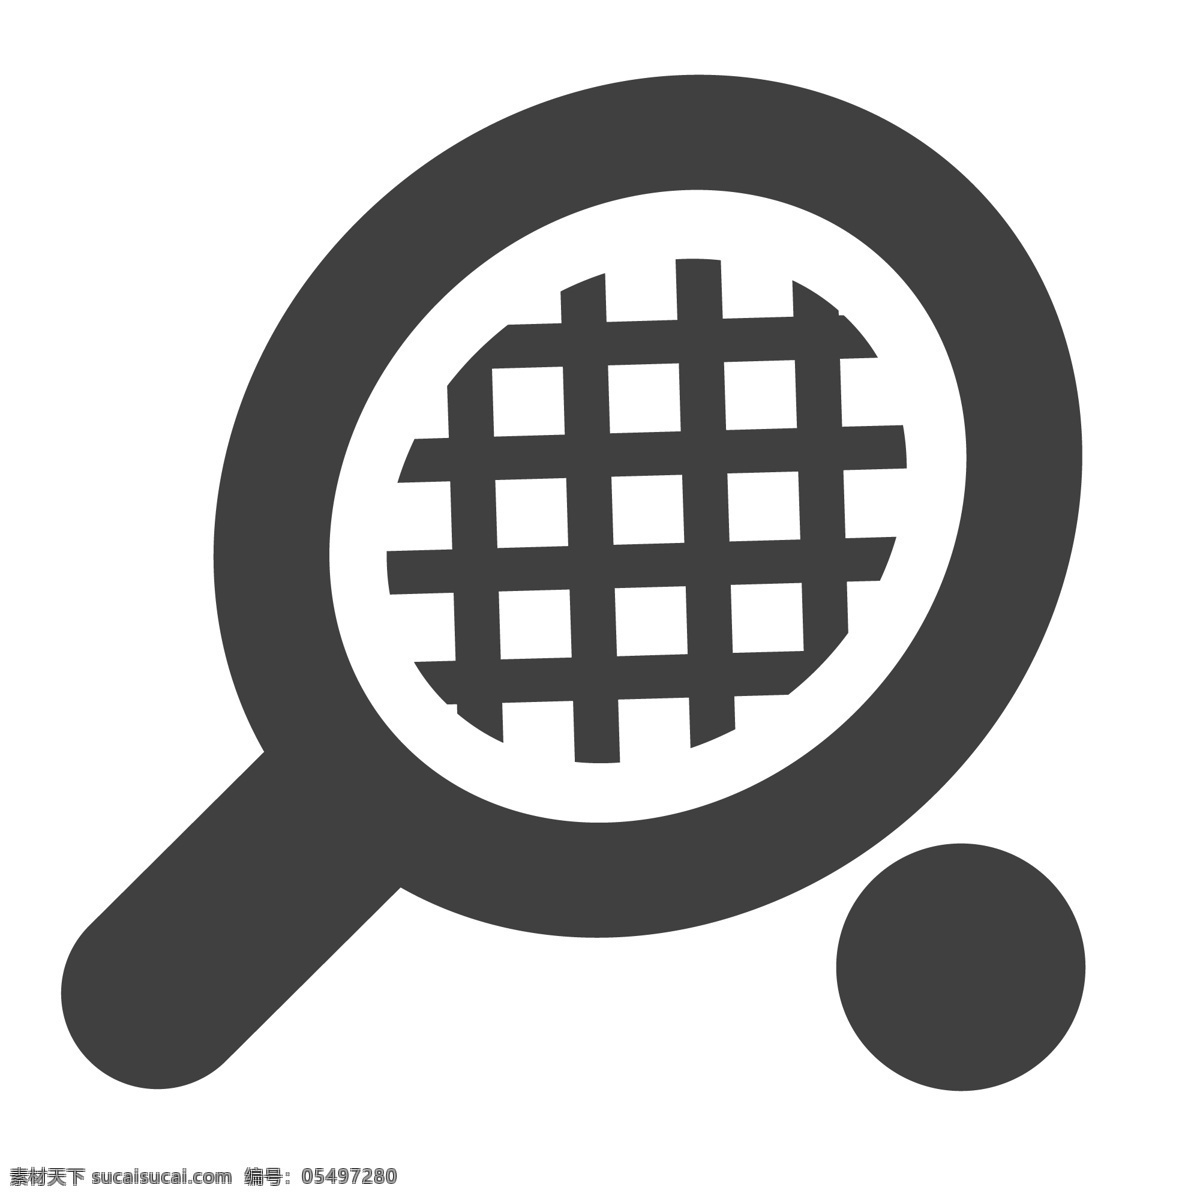 运动的羽毛球 球拍 羽毛球 运动 生活图标 卡通图标 黑色的图标 手机图标 智能图标设计